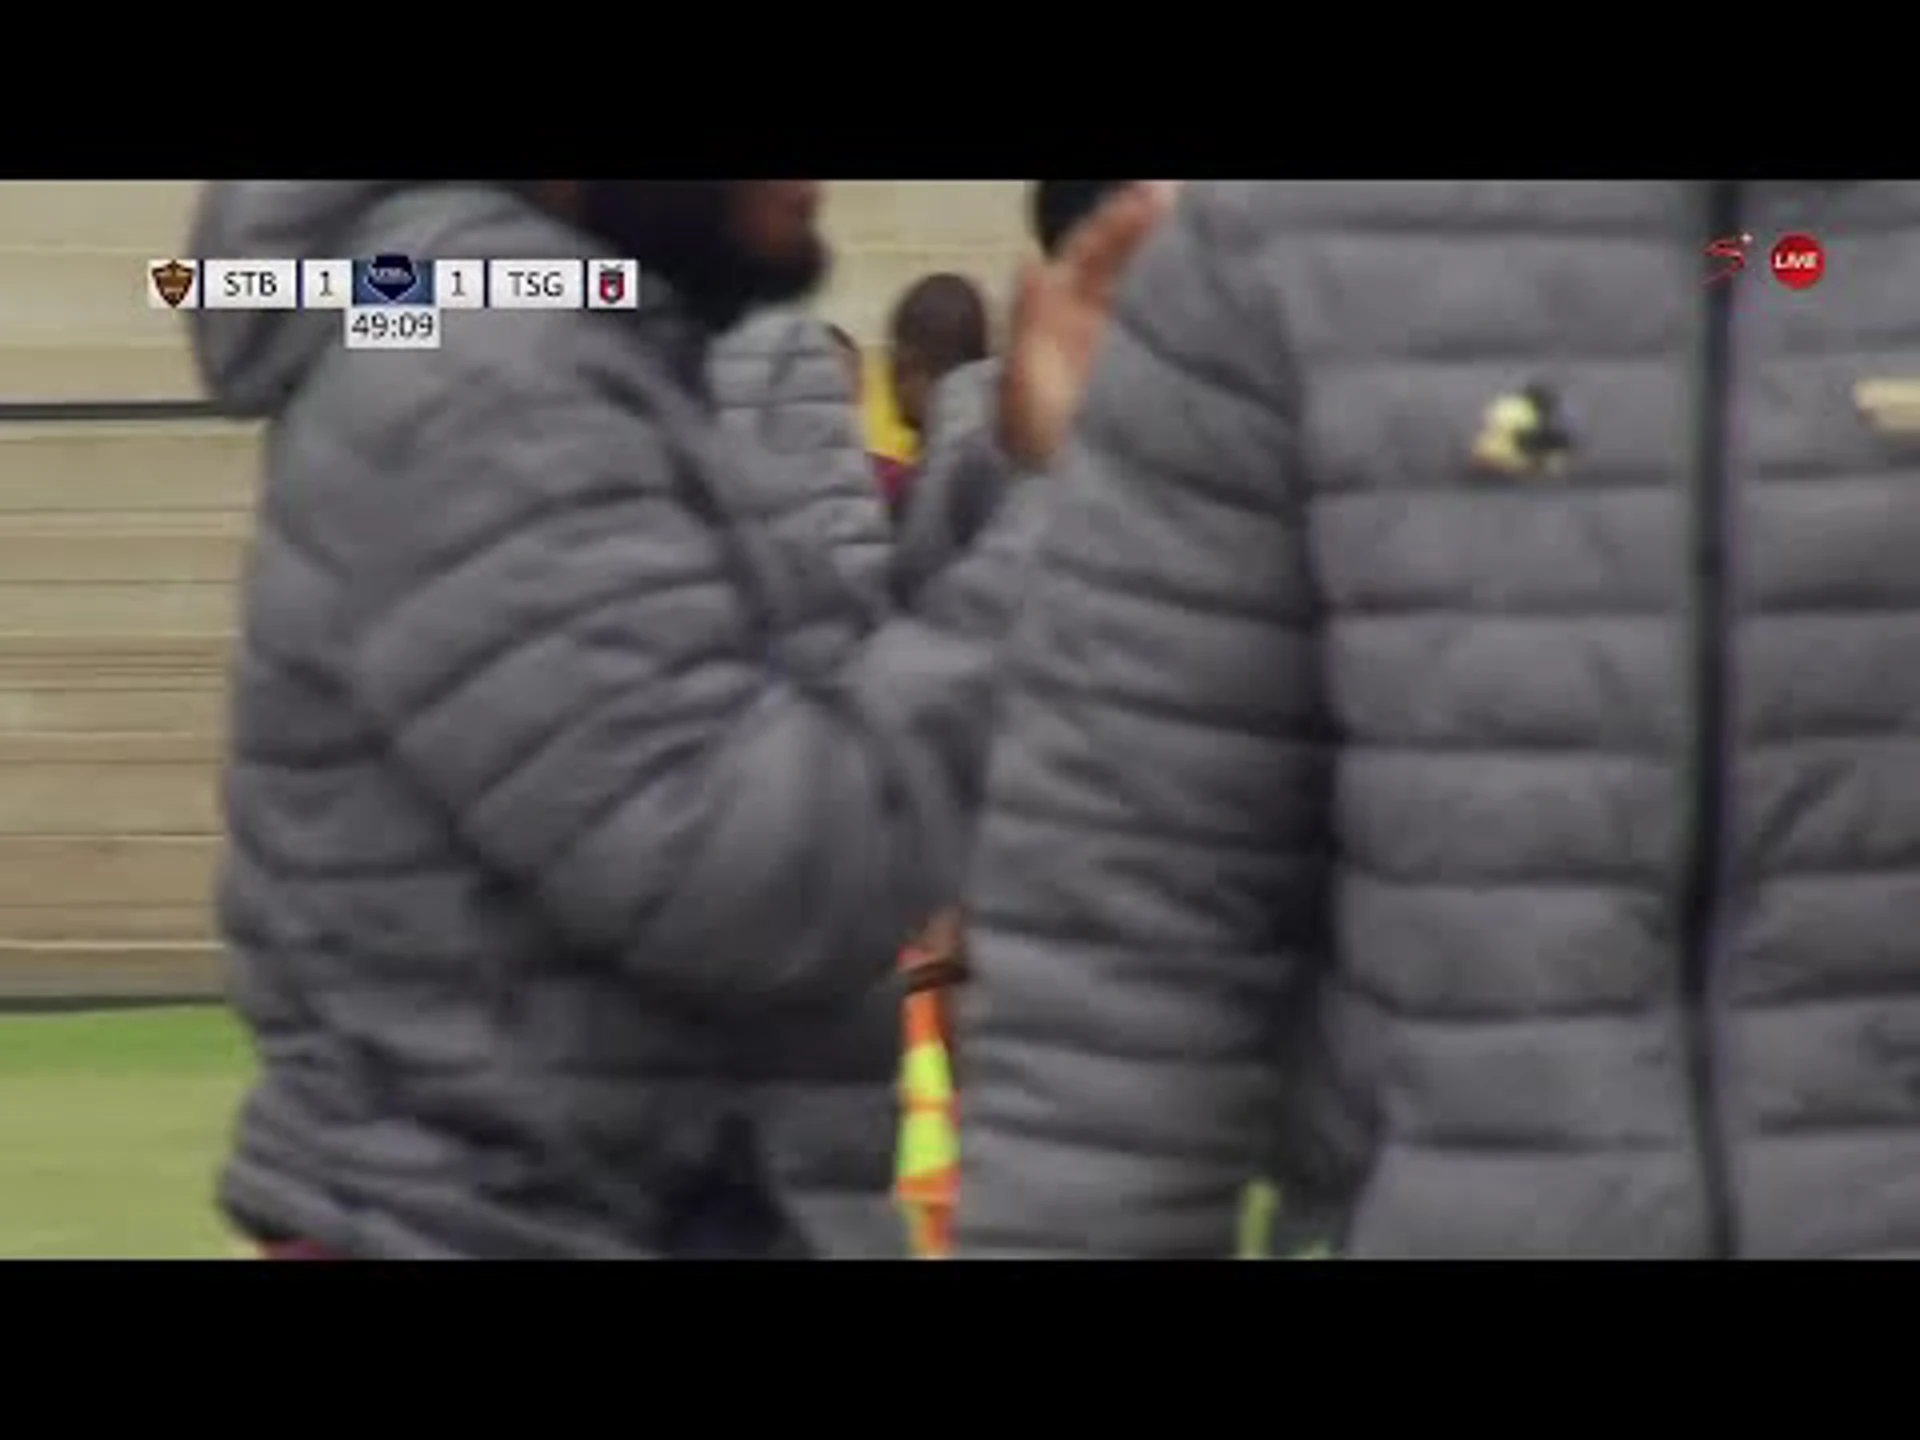 Júnior Mendieta | 49ᵗʰ Minute Goal v TS Galaxy